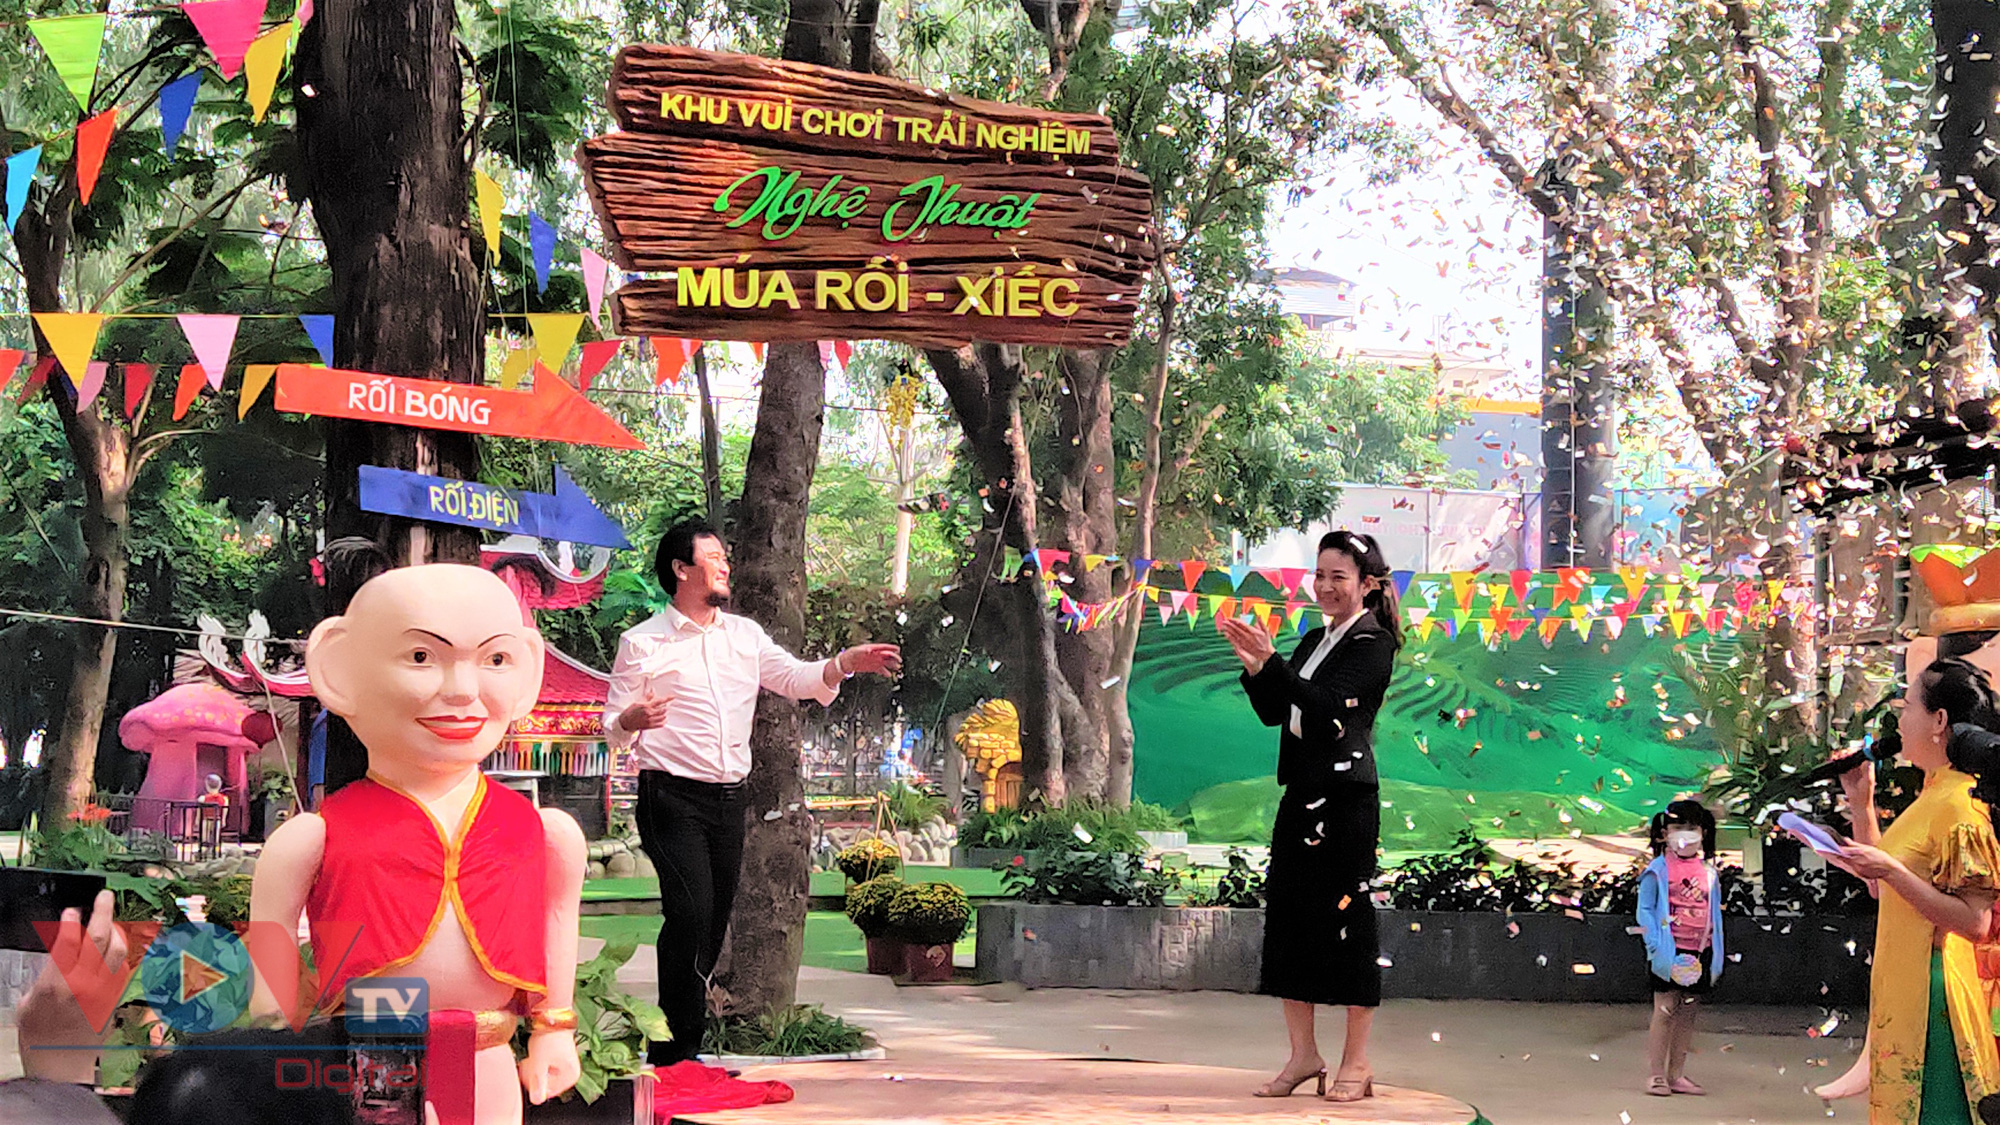 TP. Hồ Chí Minh có Khu vui chơi trải nghiệm Múa rối và Xiếc   - Ảnh 1.